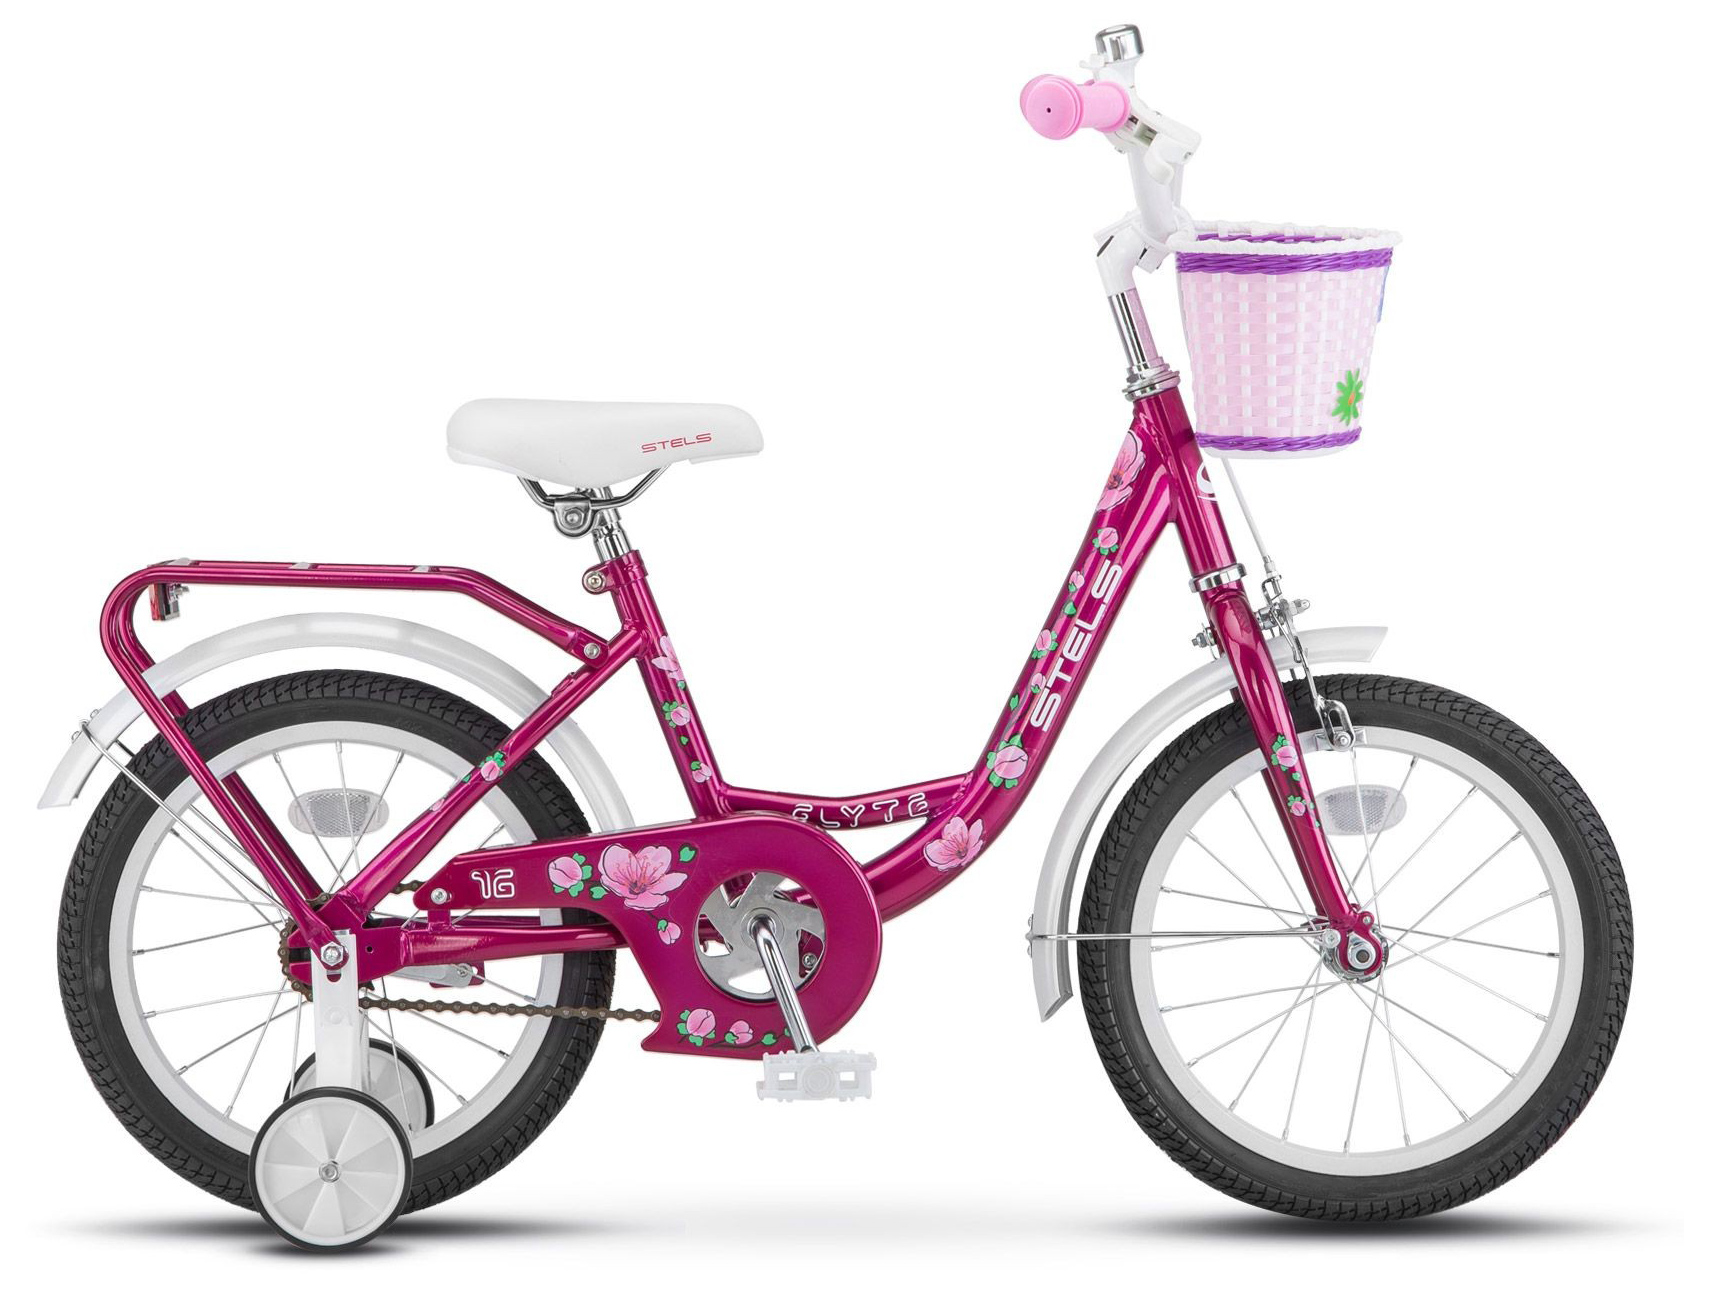  Отзывы о Трехколесный детский велосипед Stels Flyte Lady 16 (Z011) 2019